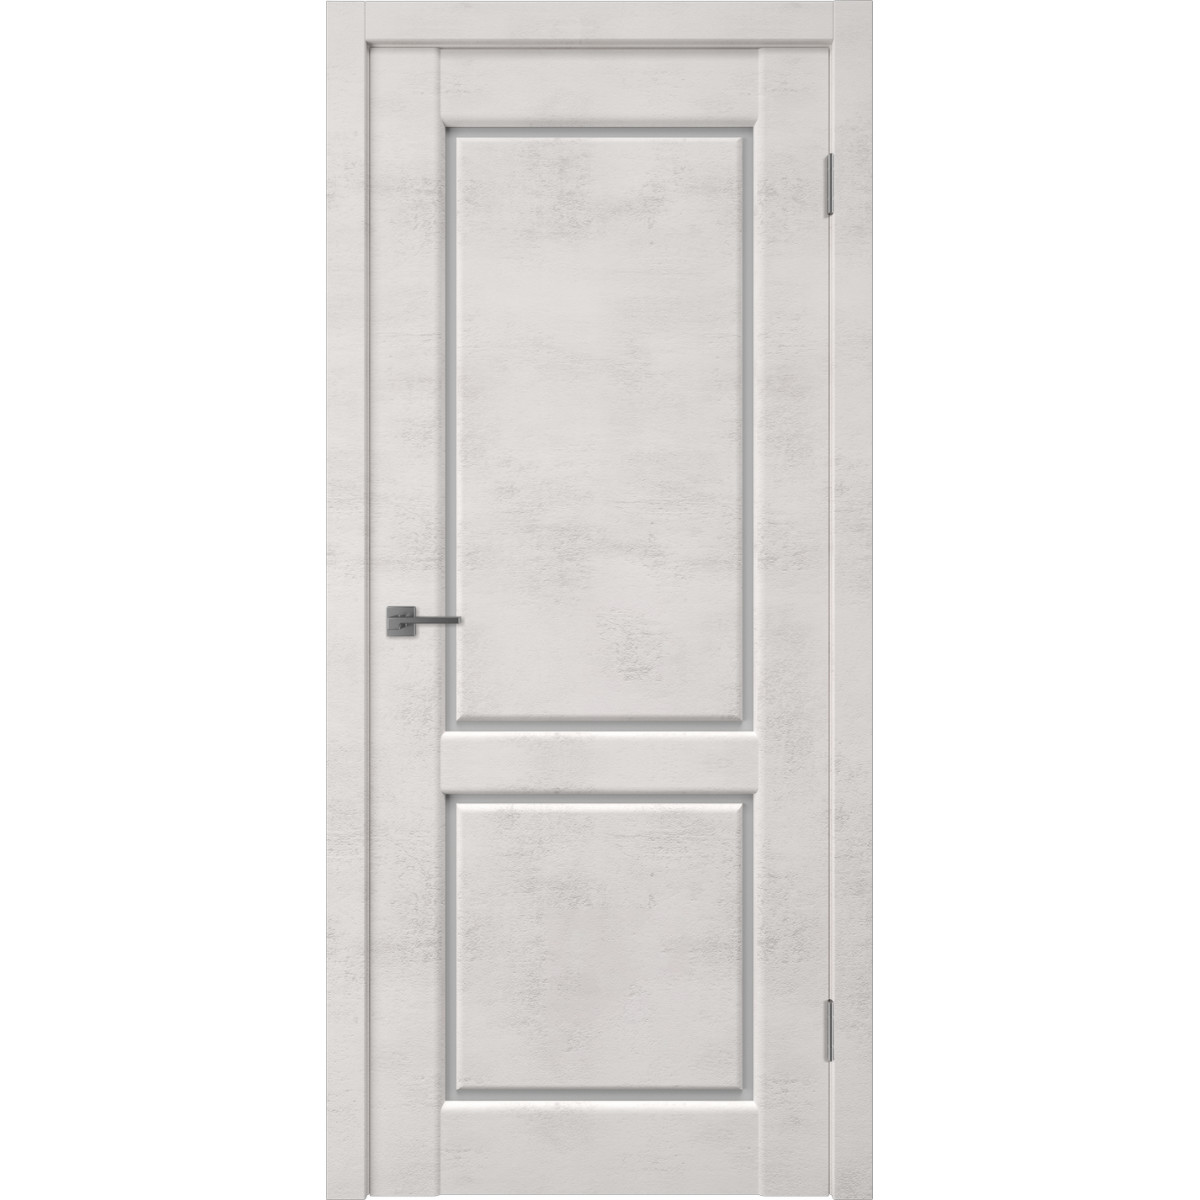 Дверь межкомнатная остеклённая Манхэттен 2 с фурнитурой 60х200 см, ПВХ, цвет лофт крем